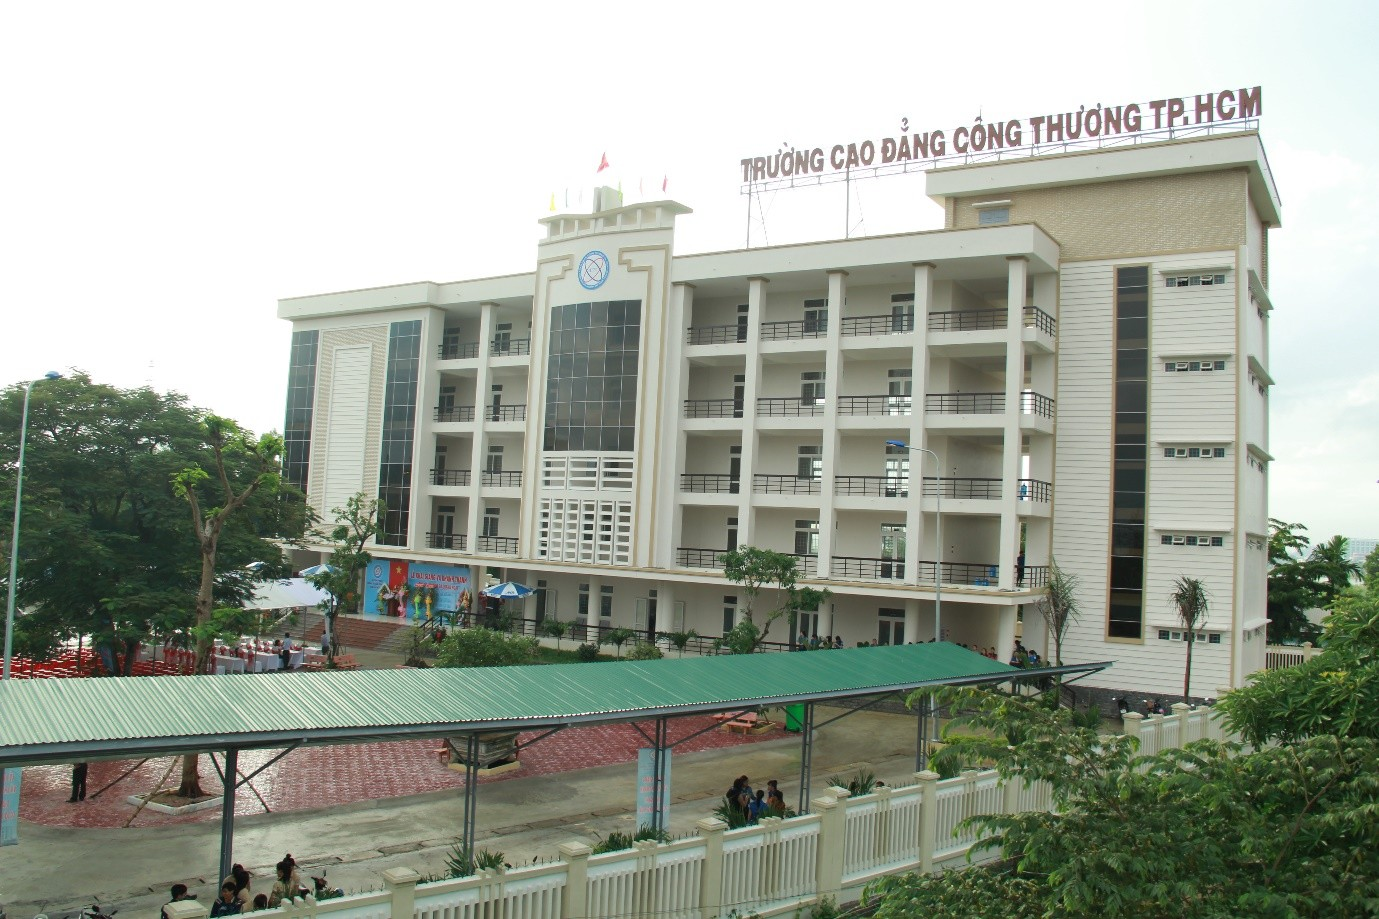 Cao đẳng Công thương Thành phố Hồ Chí Minh